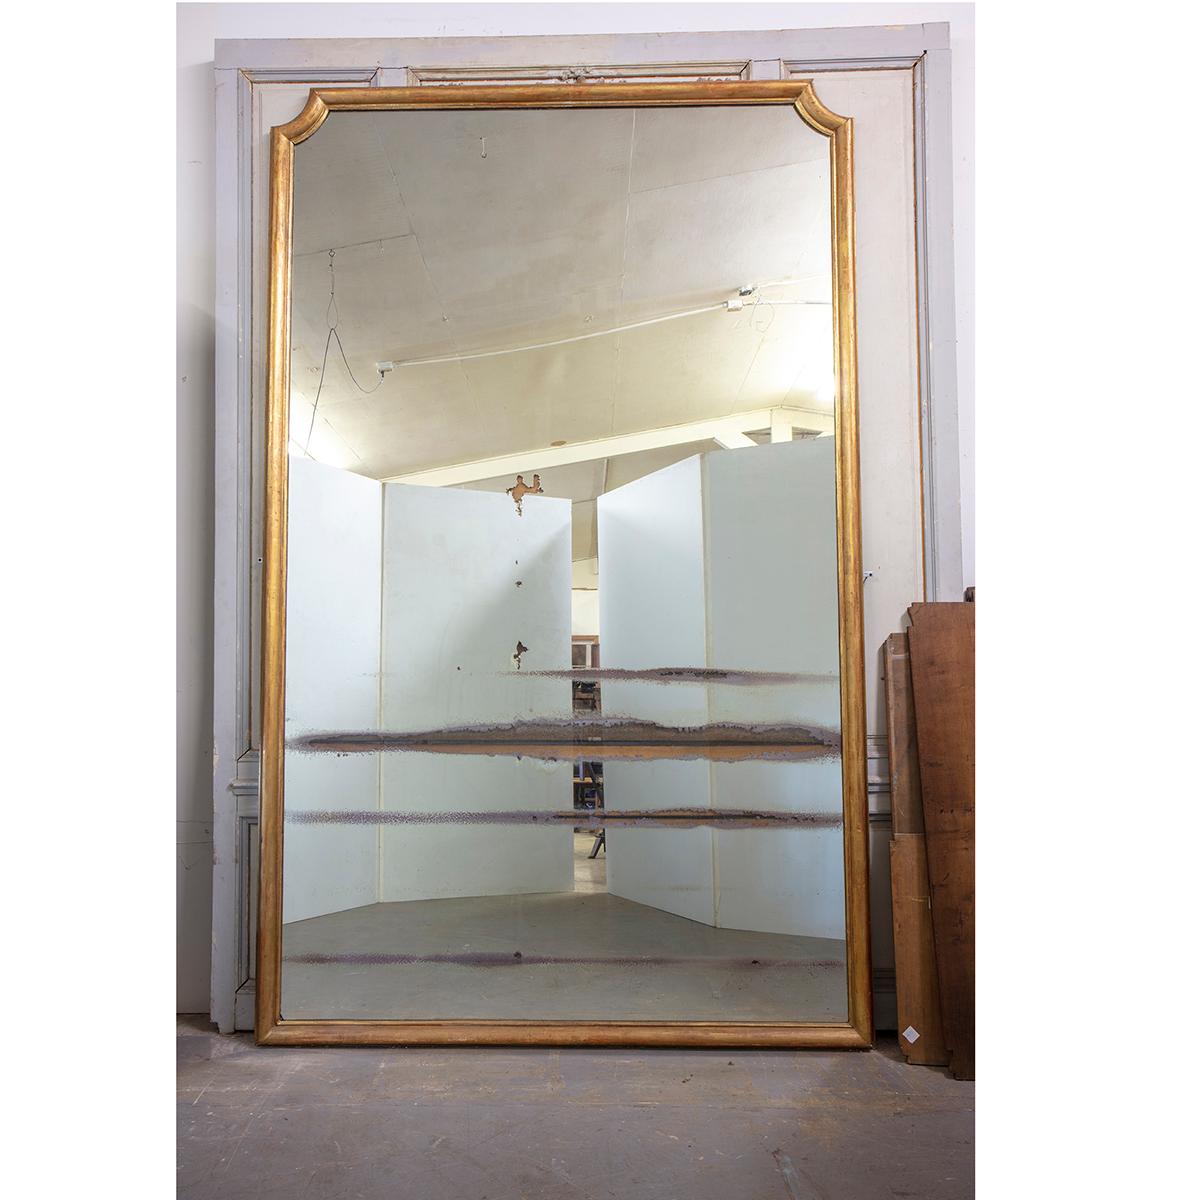 Il s'agit d'un miroir français massif du XIXe siècle provenant de la salle principale du palais de l'archevêque de Rouen, en Normandie, France. Ce miroir mesure plus de 10 pieds de haut et plus de 6 pieds de large. Le cadre et le miroir sont